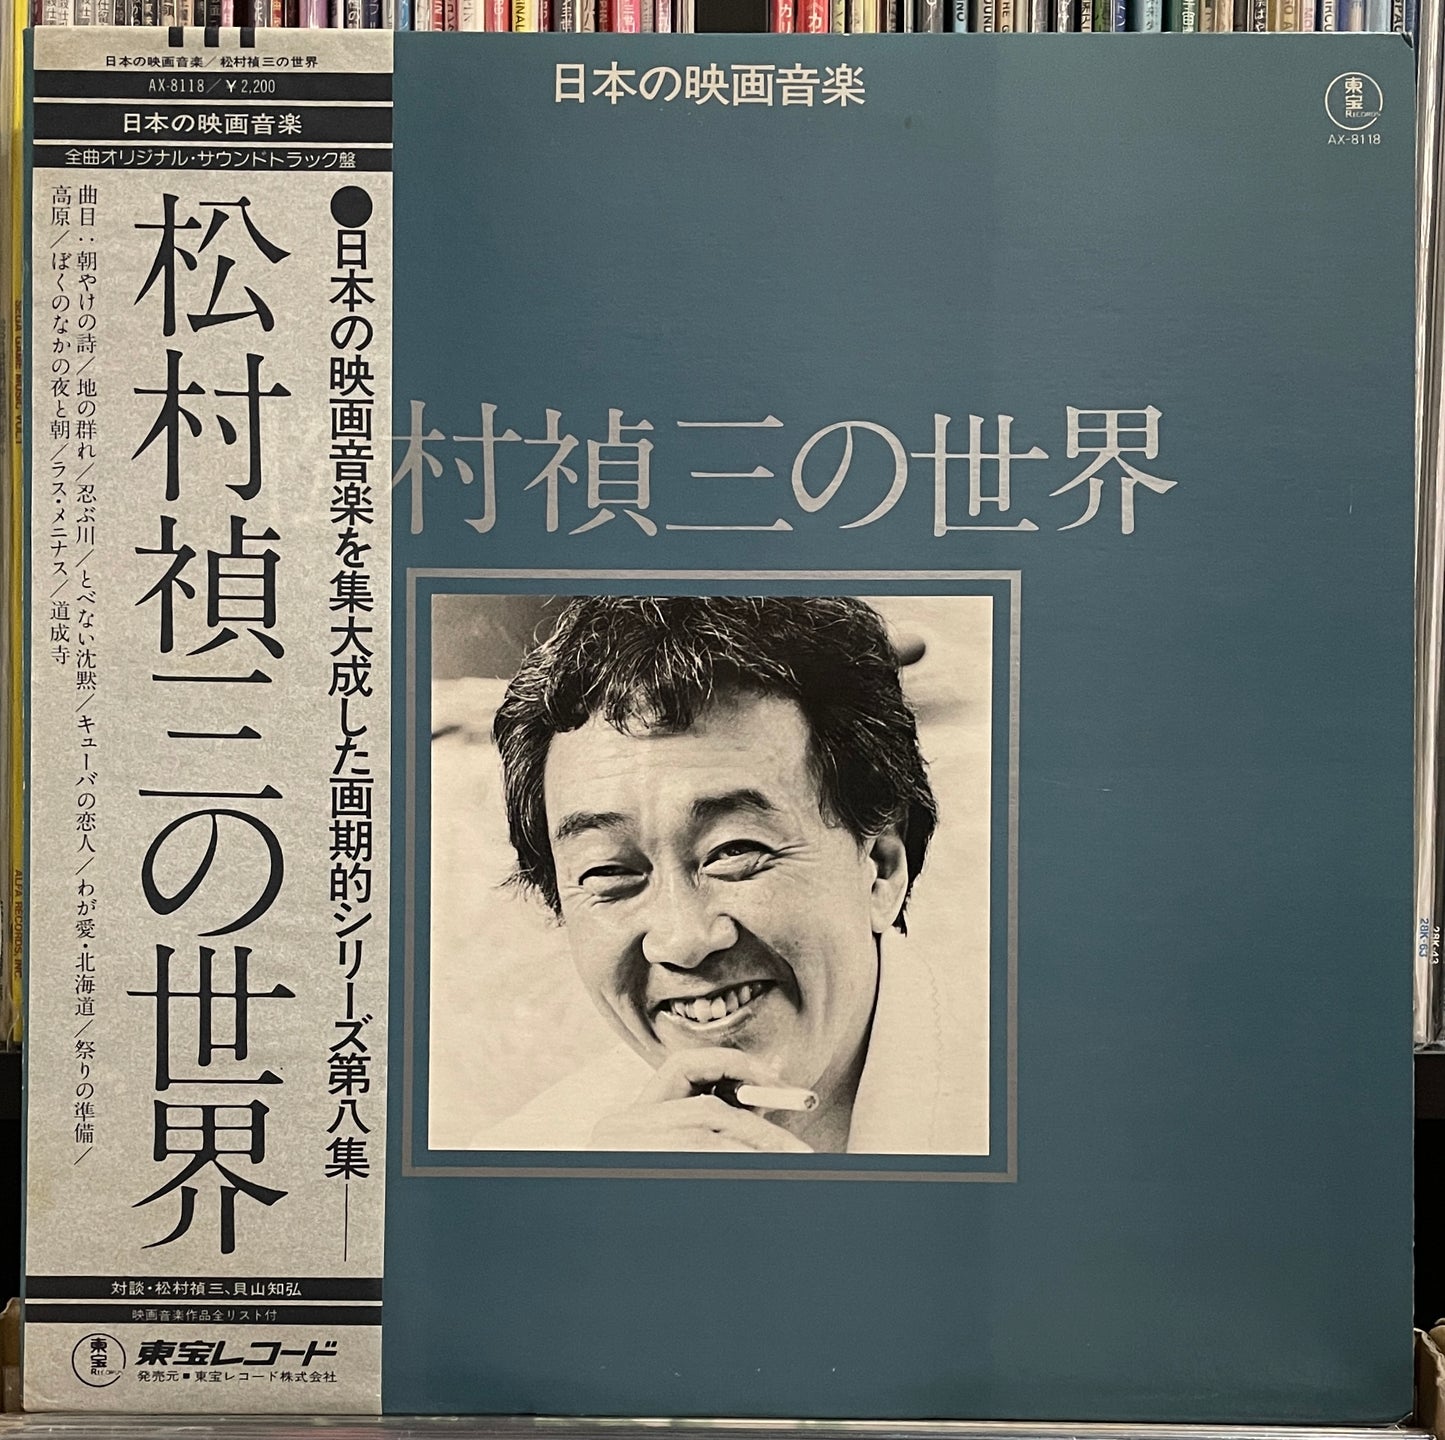 Works Of Teizoh Matsumura (1978)